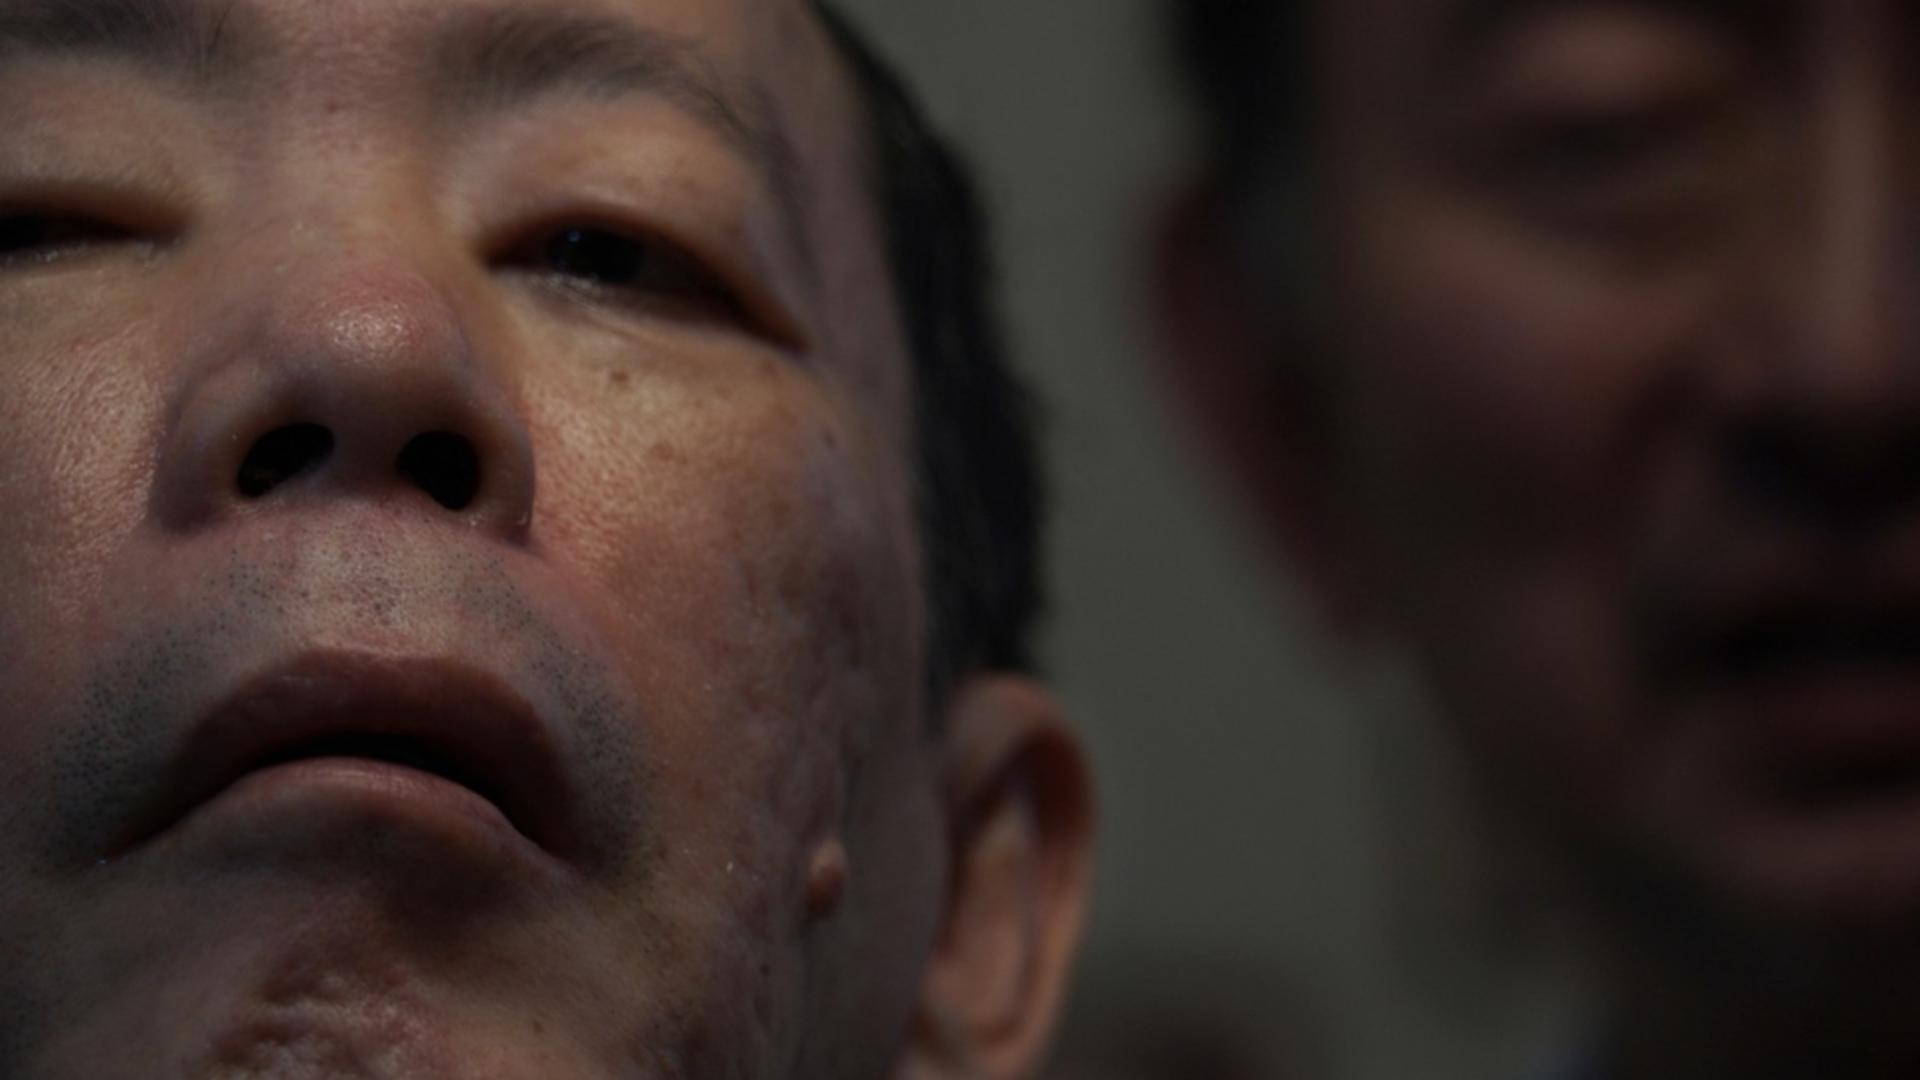 A murit „Canibalul japonez” - Crima care a zguduit lumea - Detalii cutremurătoare Foto: Profi Media